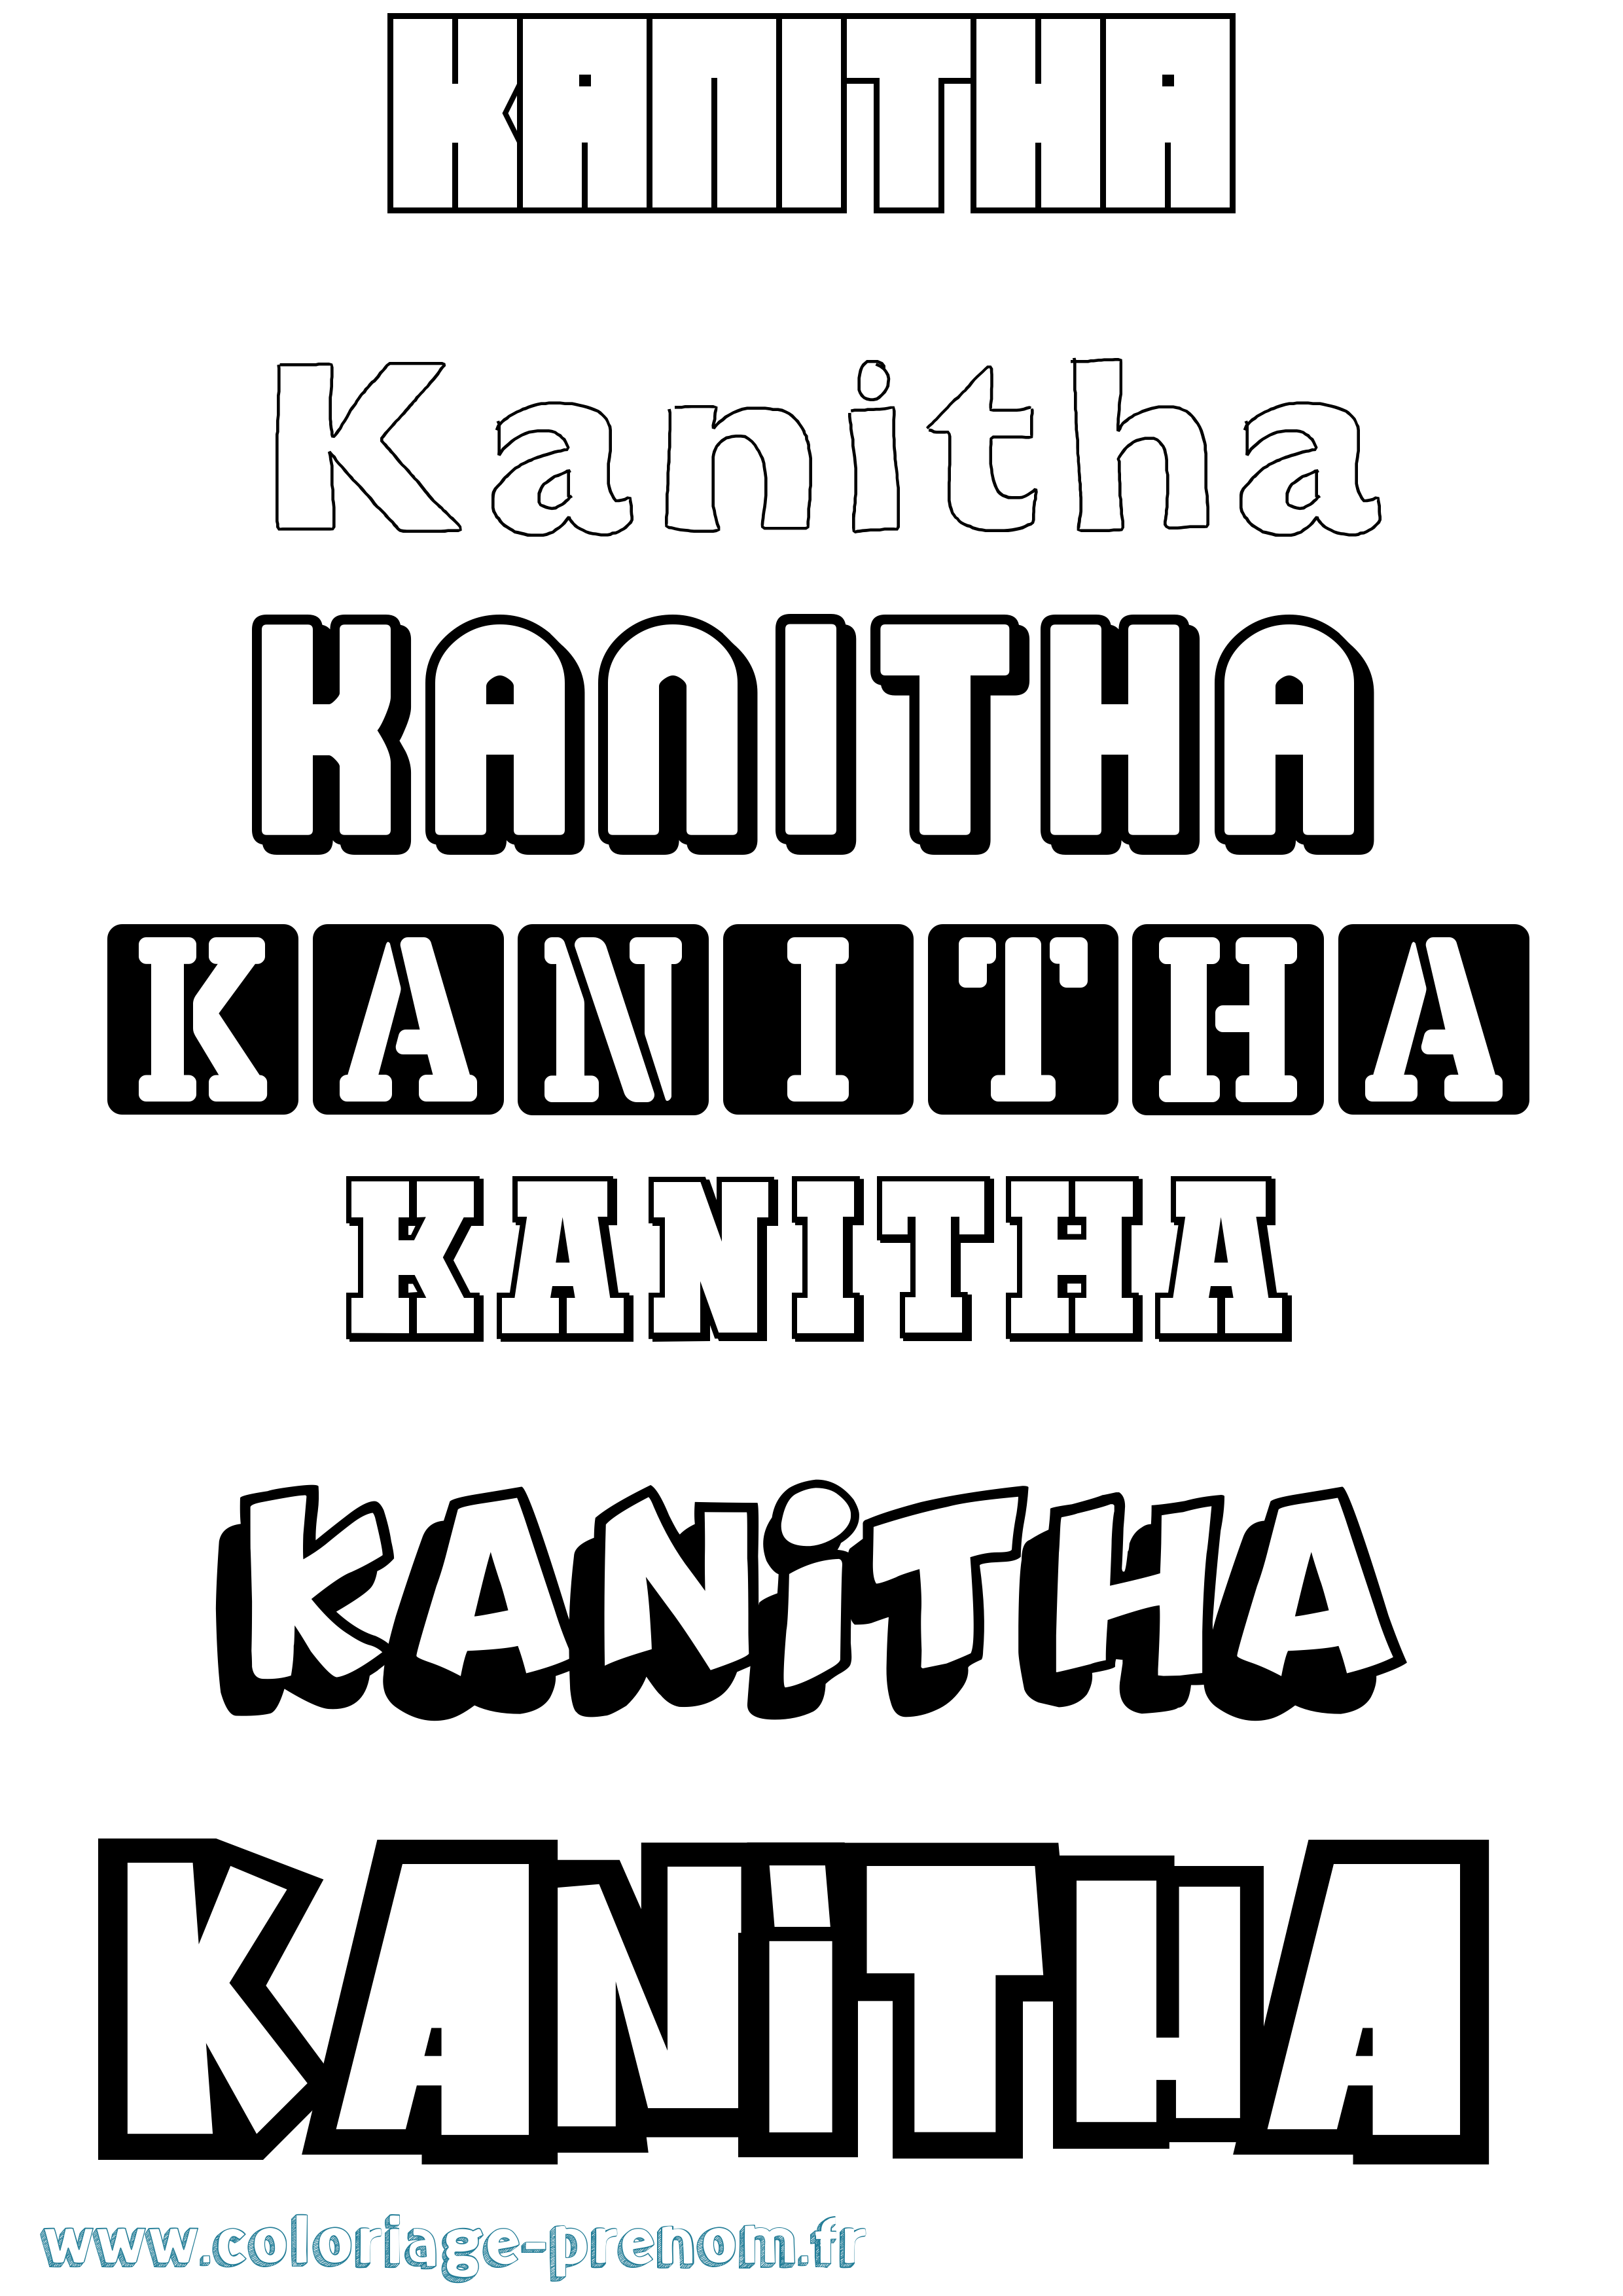 Coloriage prénom Kanitha Simple